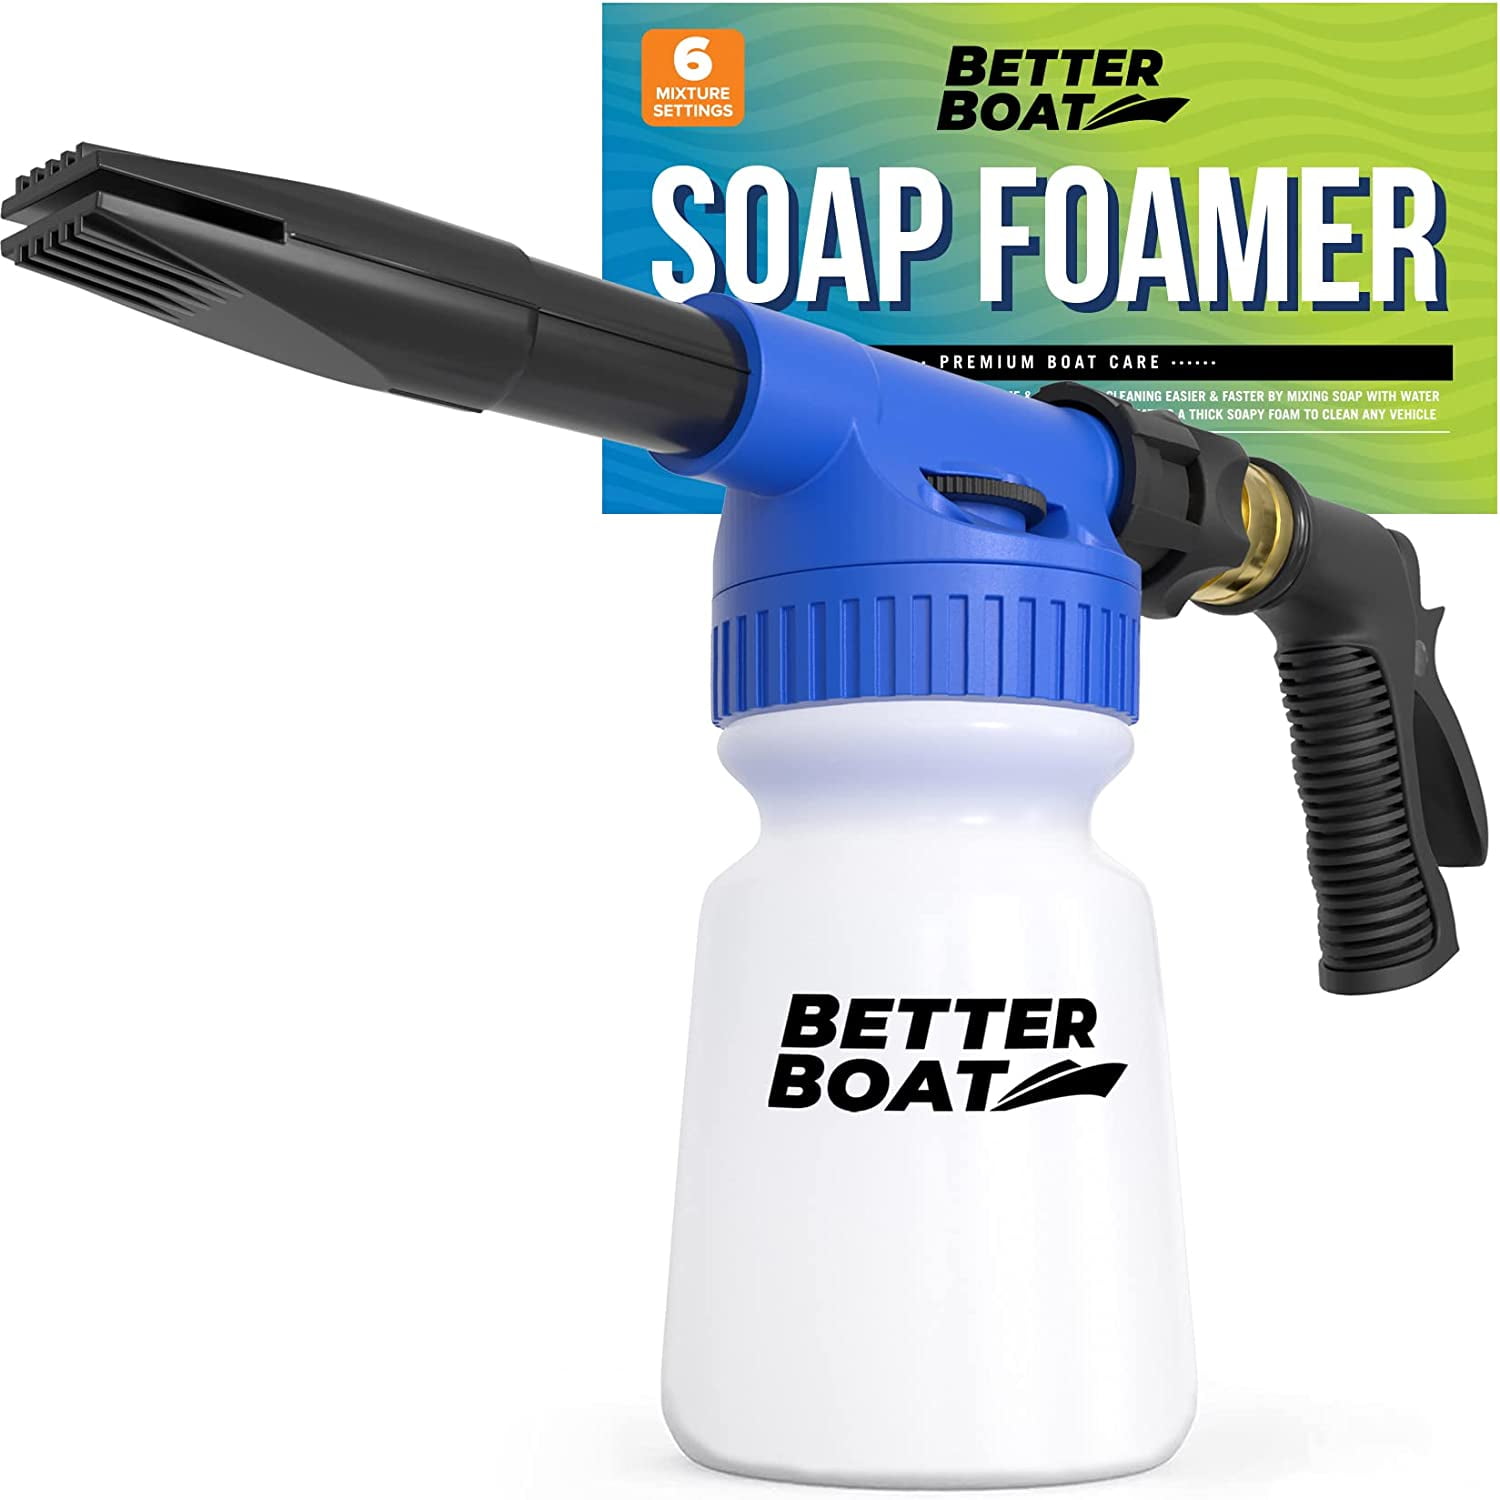 Power 5 Pressure Washer Attachment Sprayer Dispenser Car Wash Soap Foam  Blaster